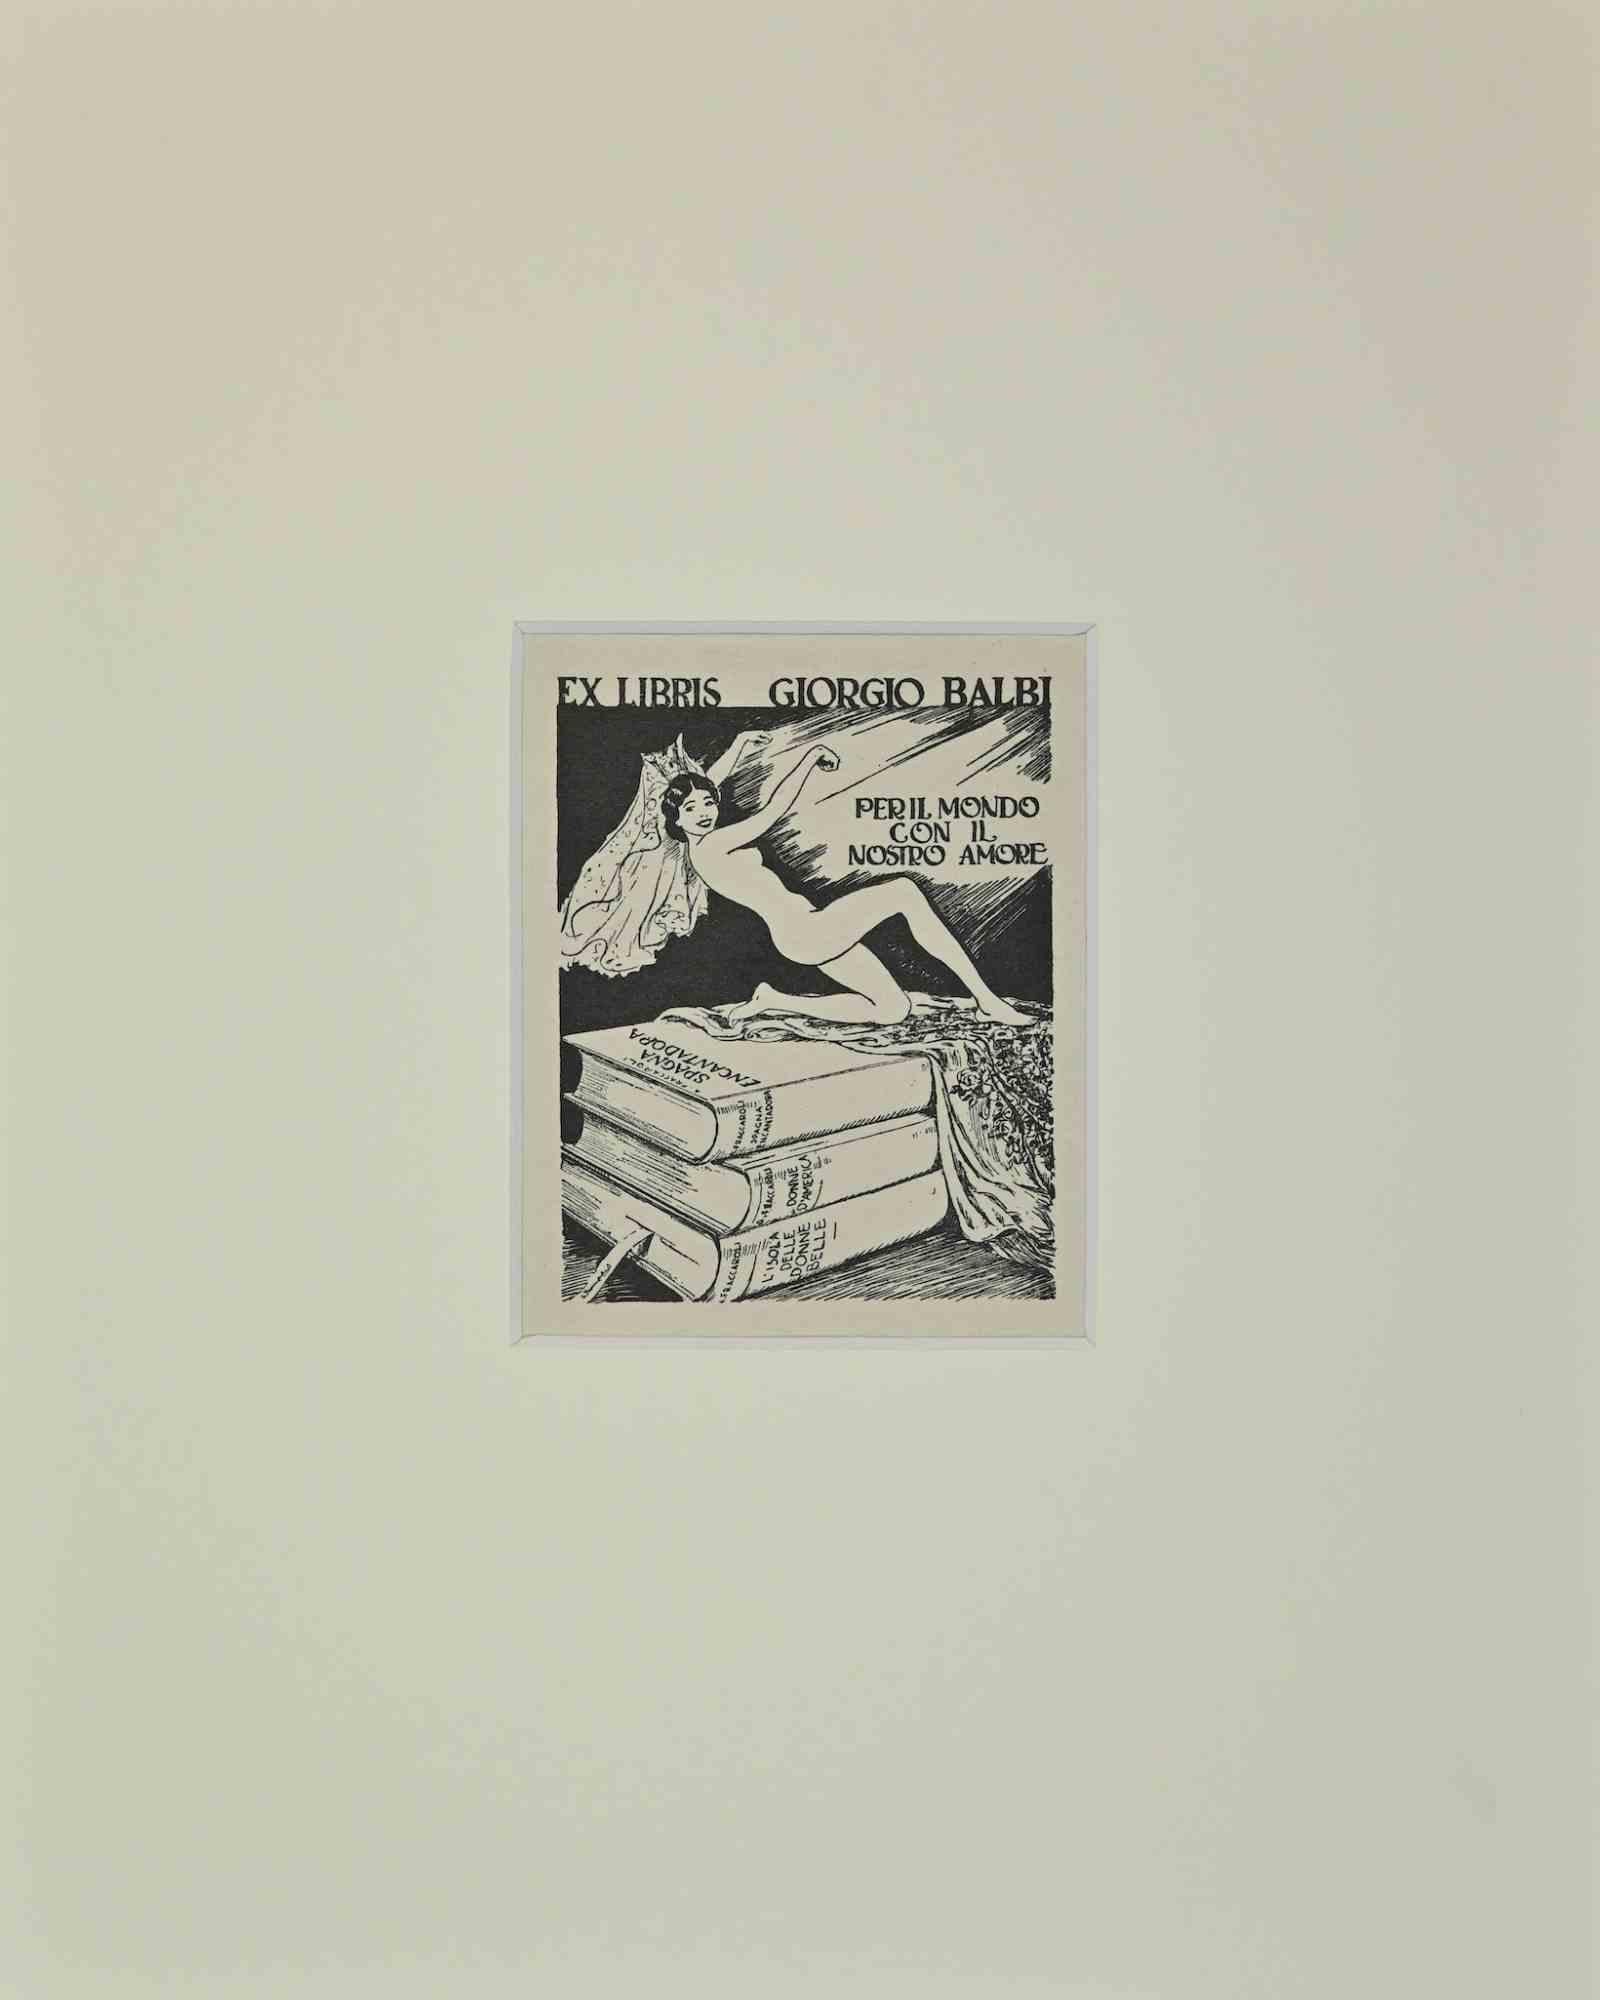 Unknown Figurative Print - Ex Libris  - Giorgio Balbi  - Per il Mondo - Woodcut - Mid-20th Century